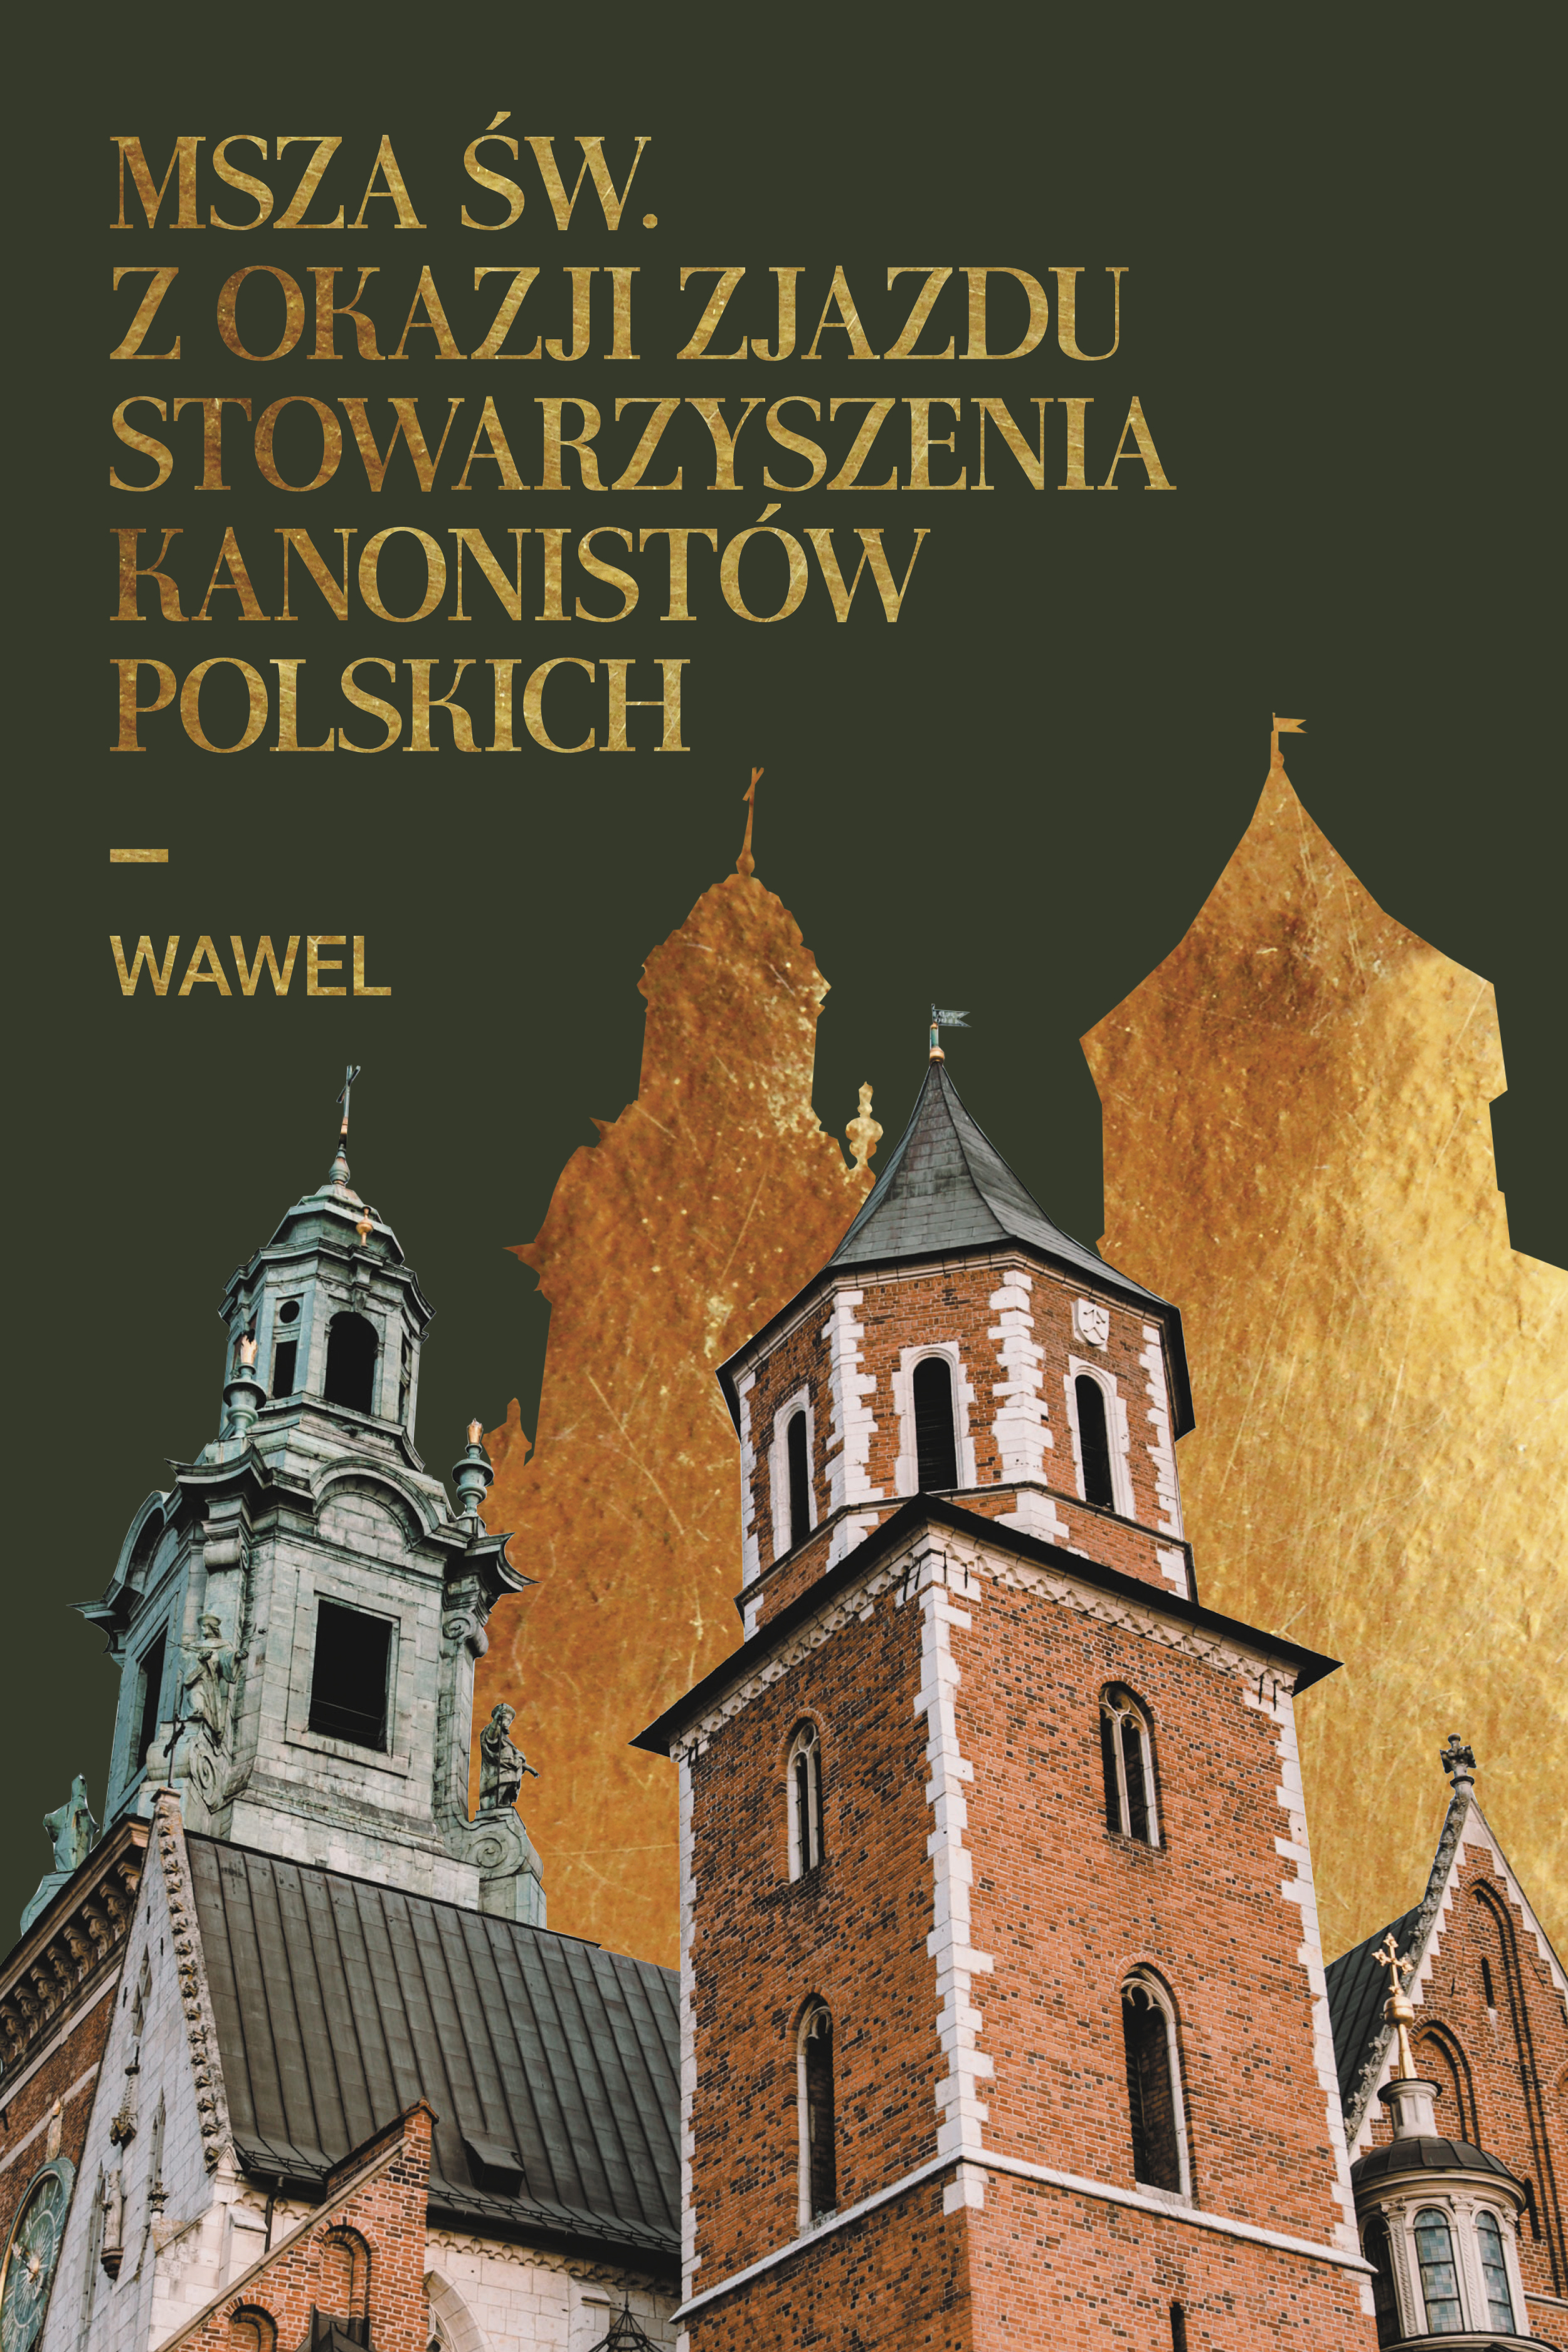 Msza św. z okazji zjazdu Stowarzyszenia Kanonistów Polskich